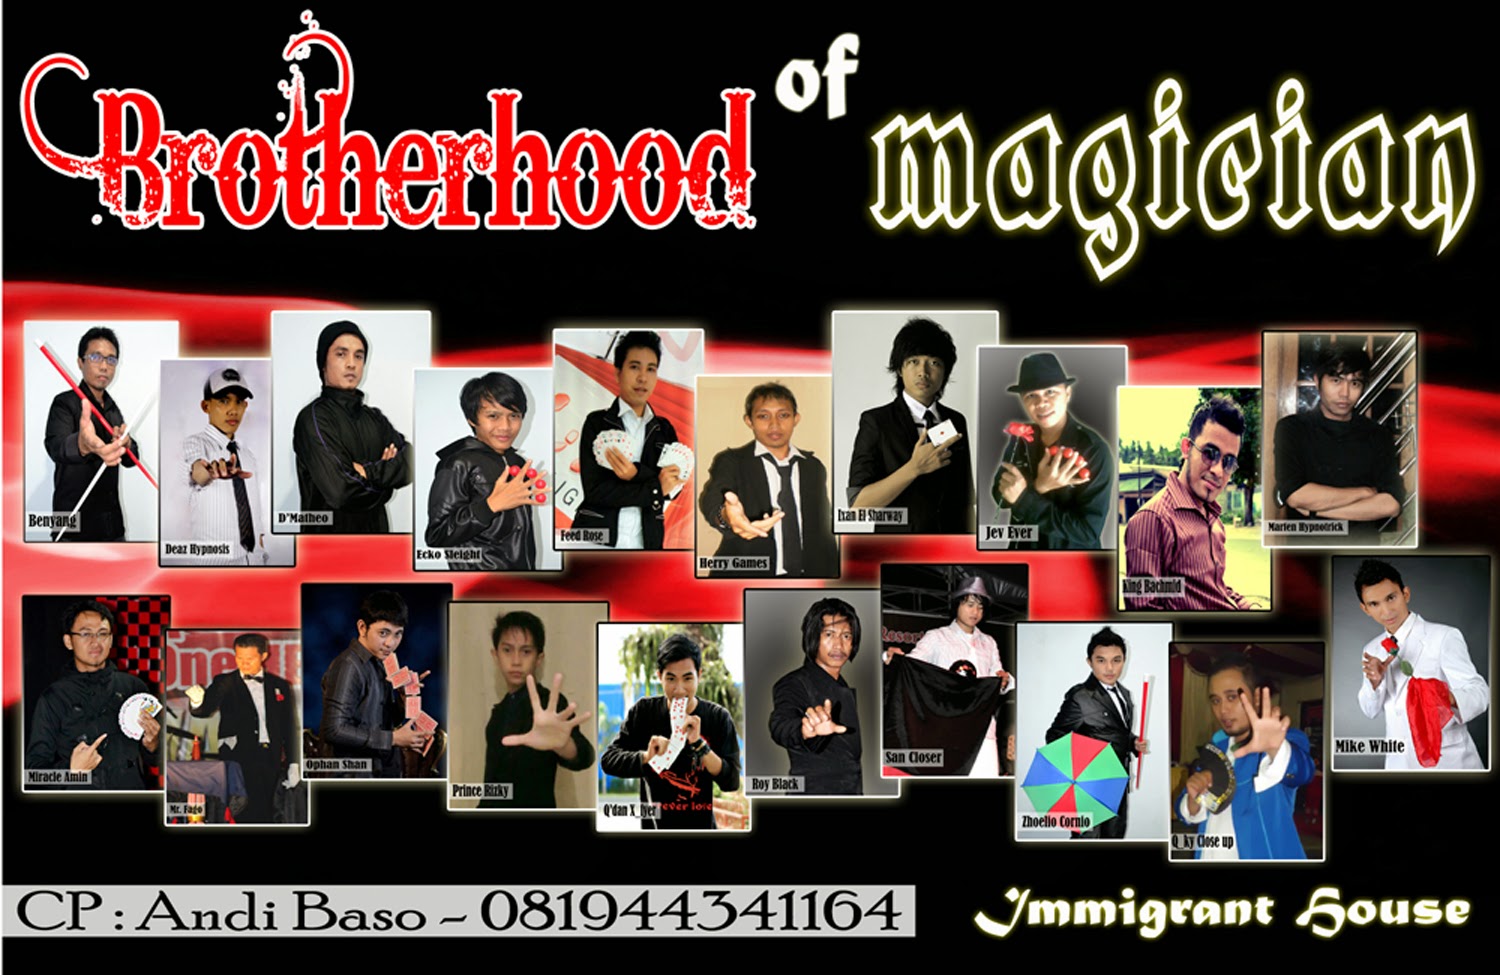 Brotherhood of Magician